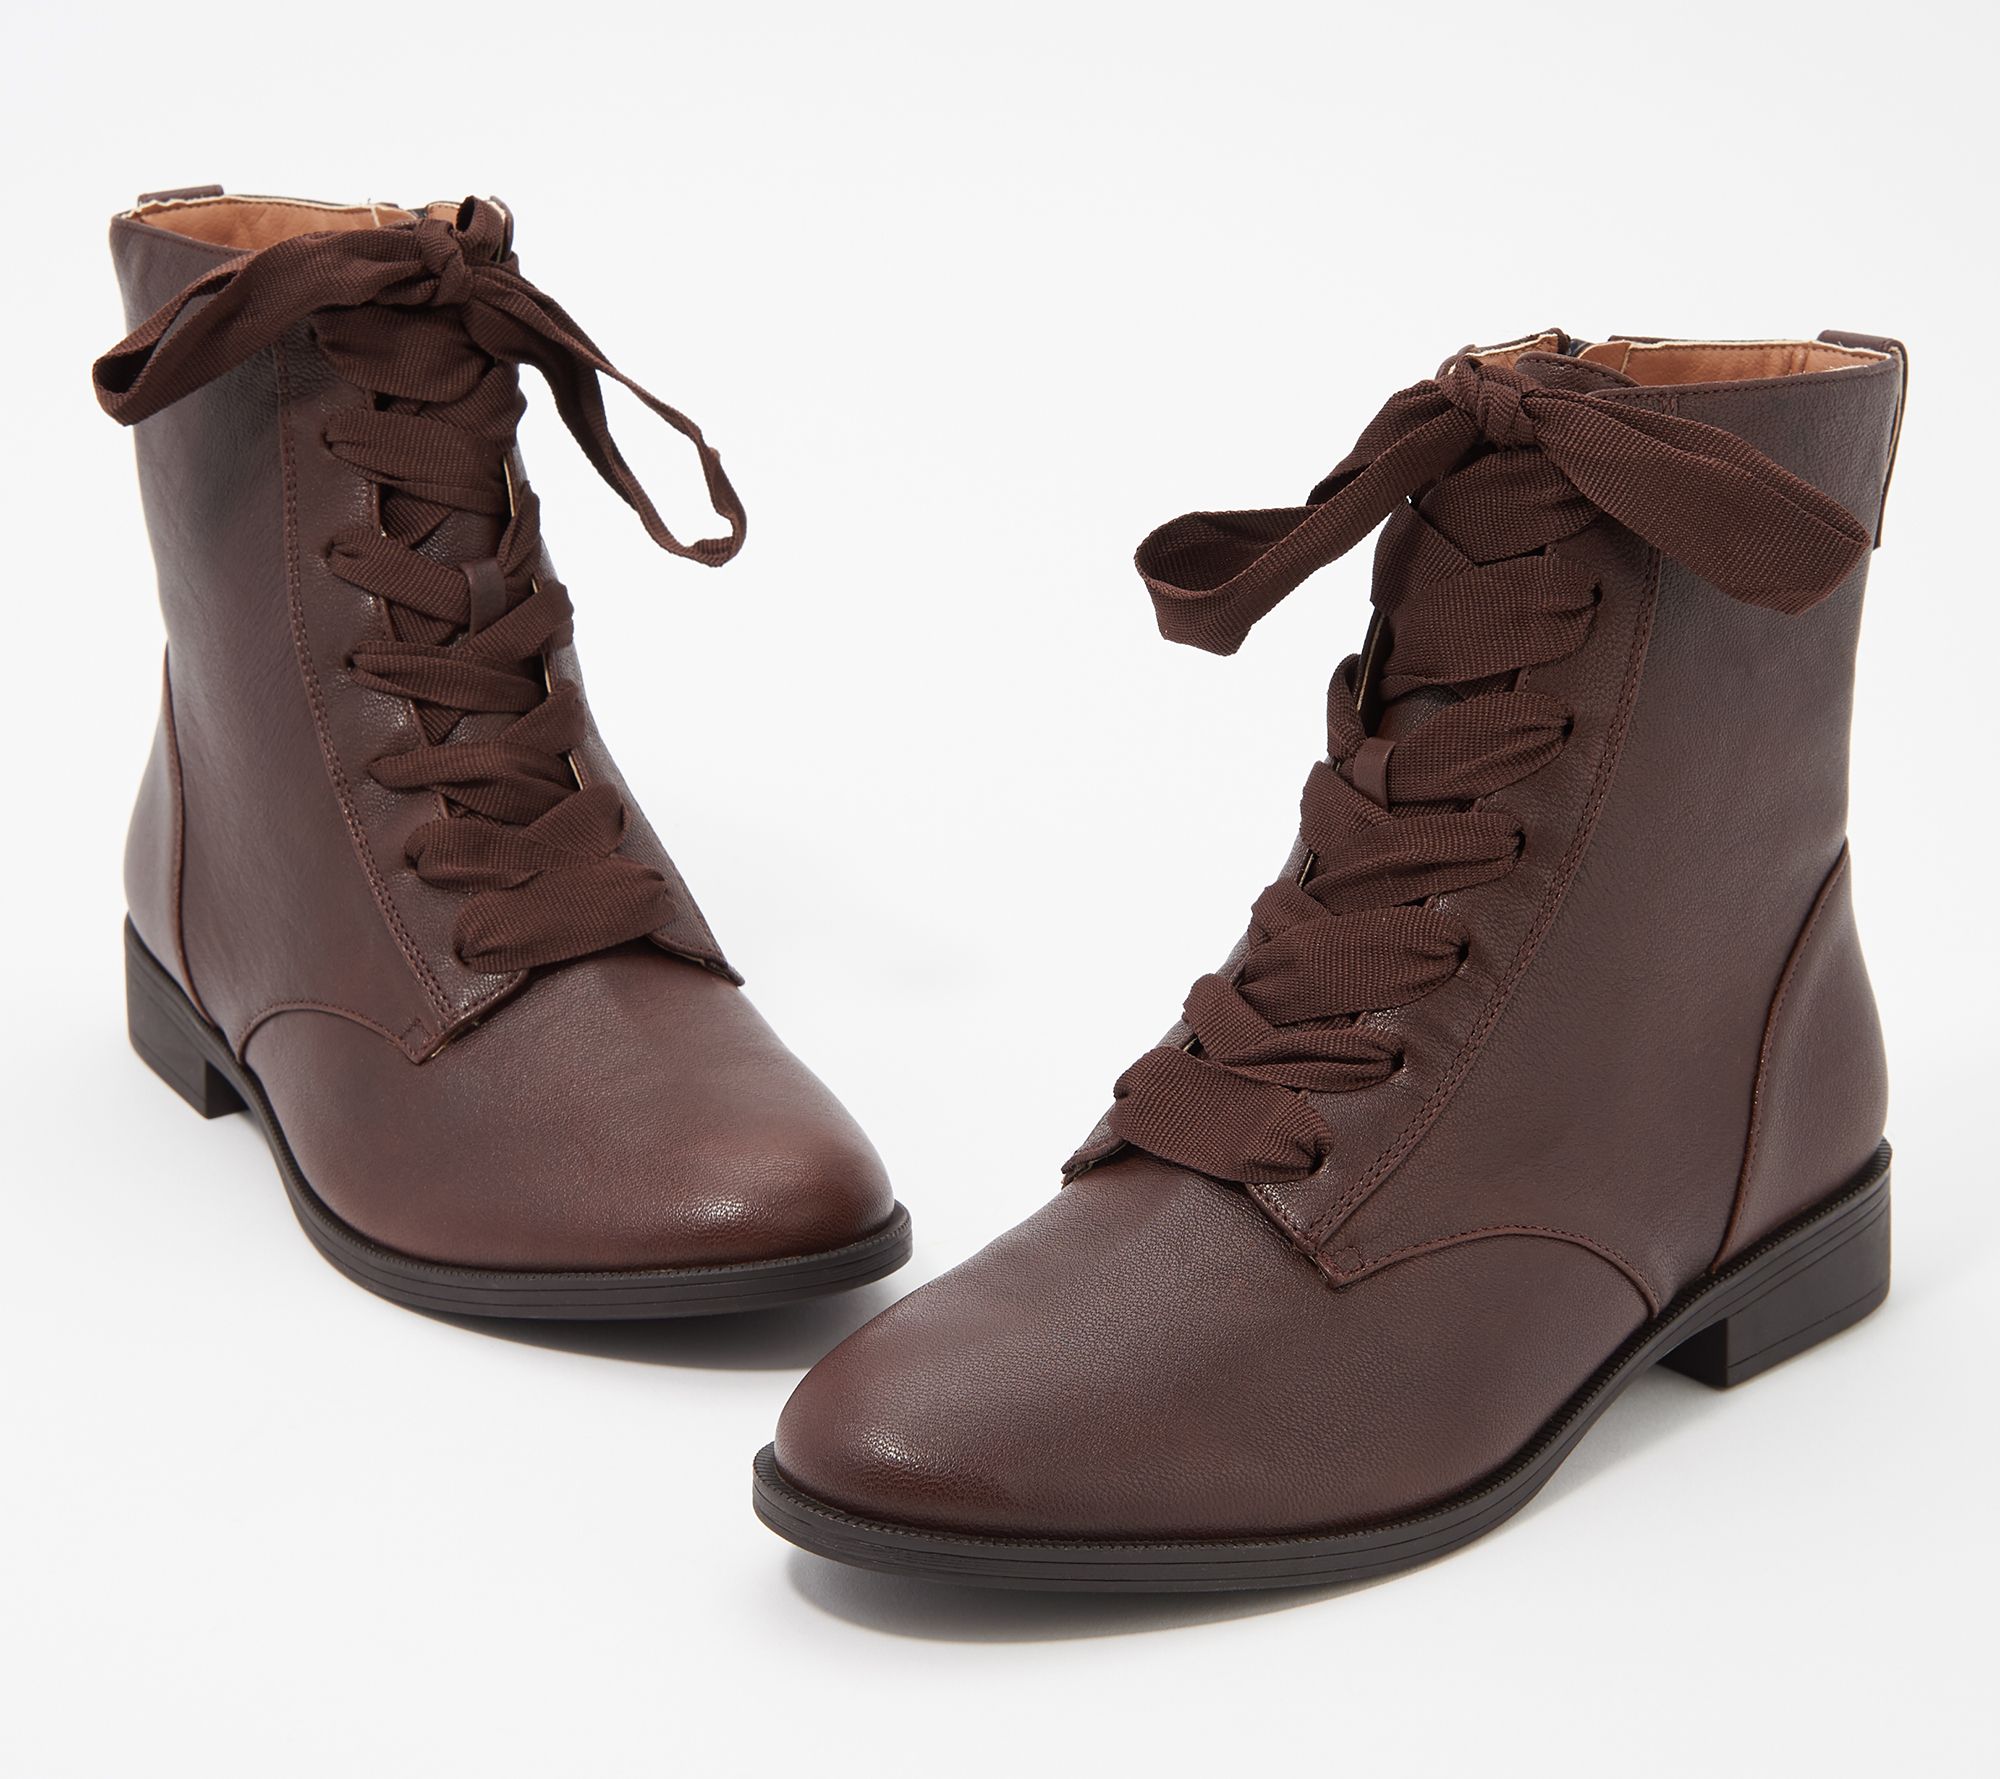 vionic boots